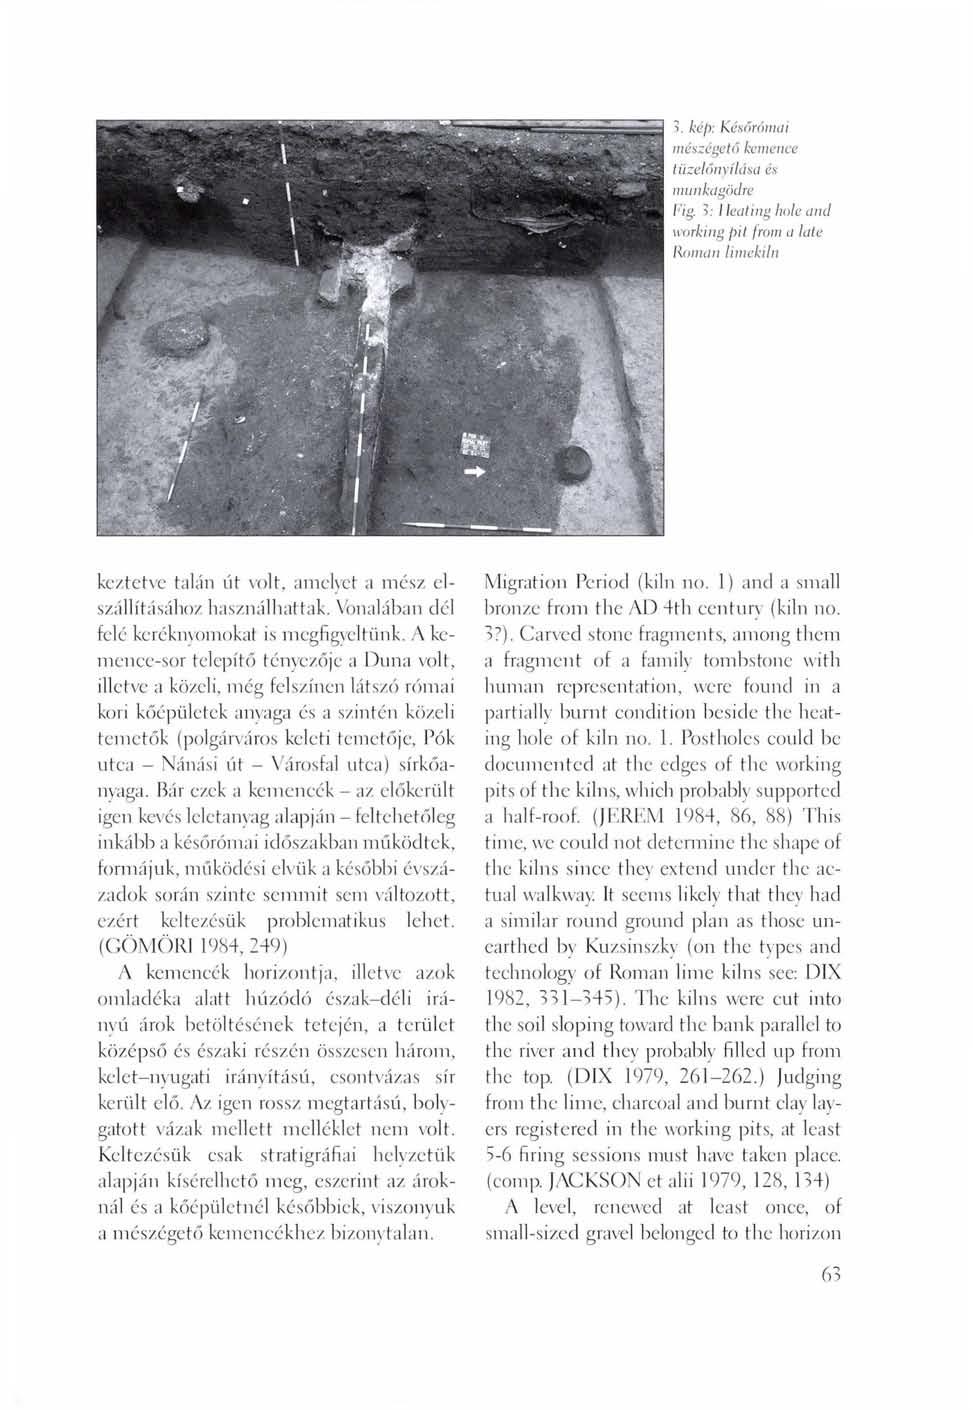 3. kép: Későrómai mészégető kemence tüzelőnyílása és munkagödre Fig. 3: I Icaiing hole and working pit from a late Roman limekiln keztetve talán út volt, amelyet a mész elszállításához használhattak.